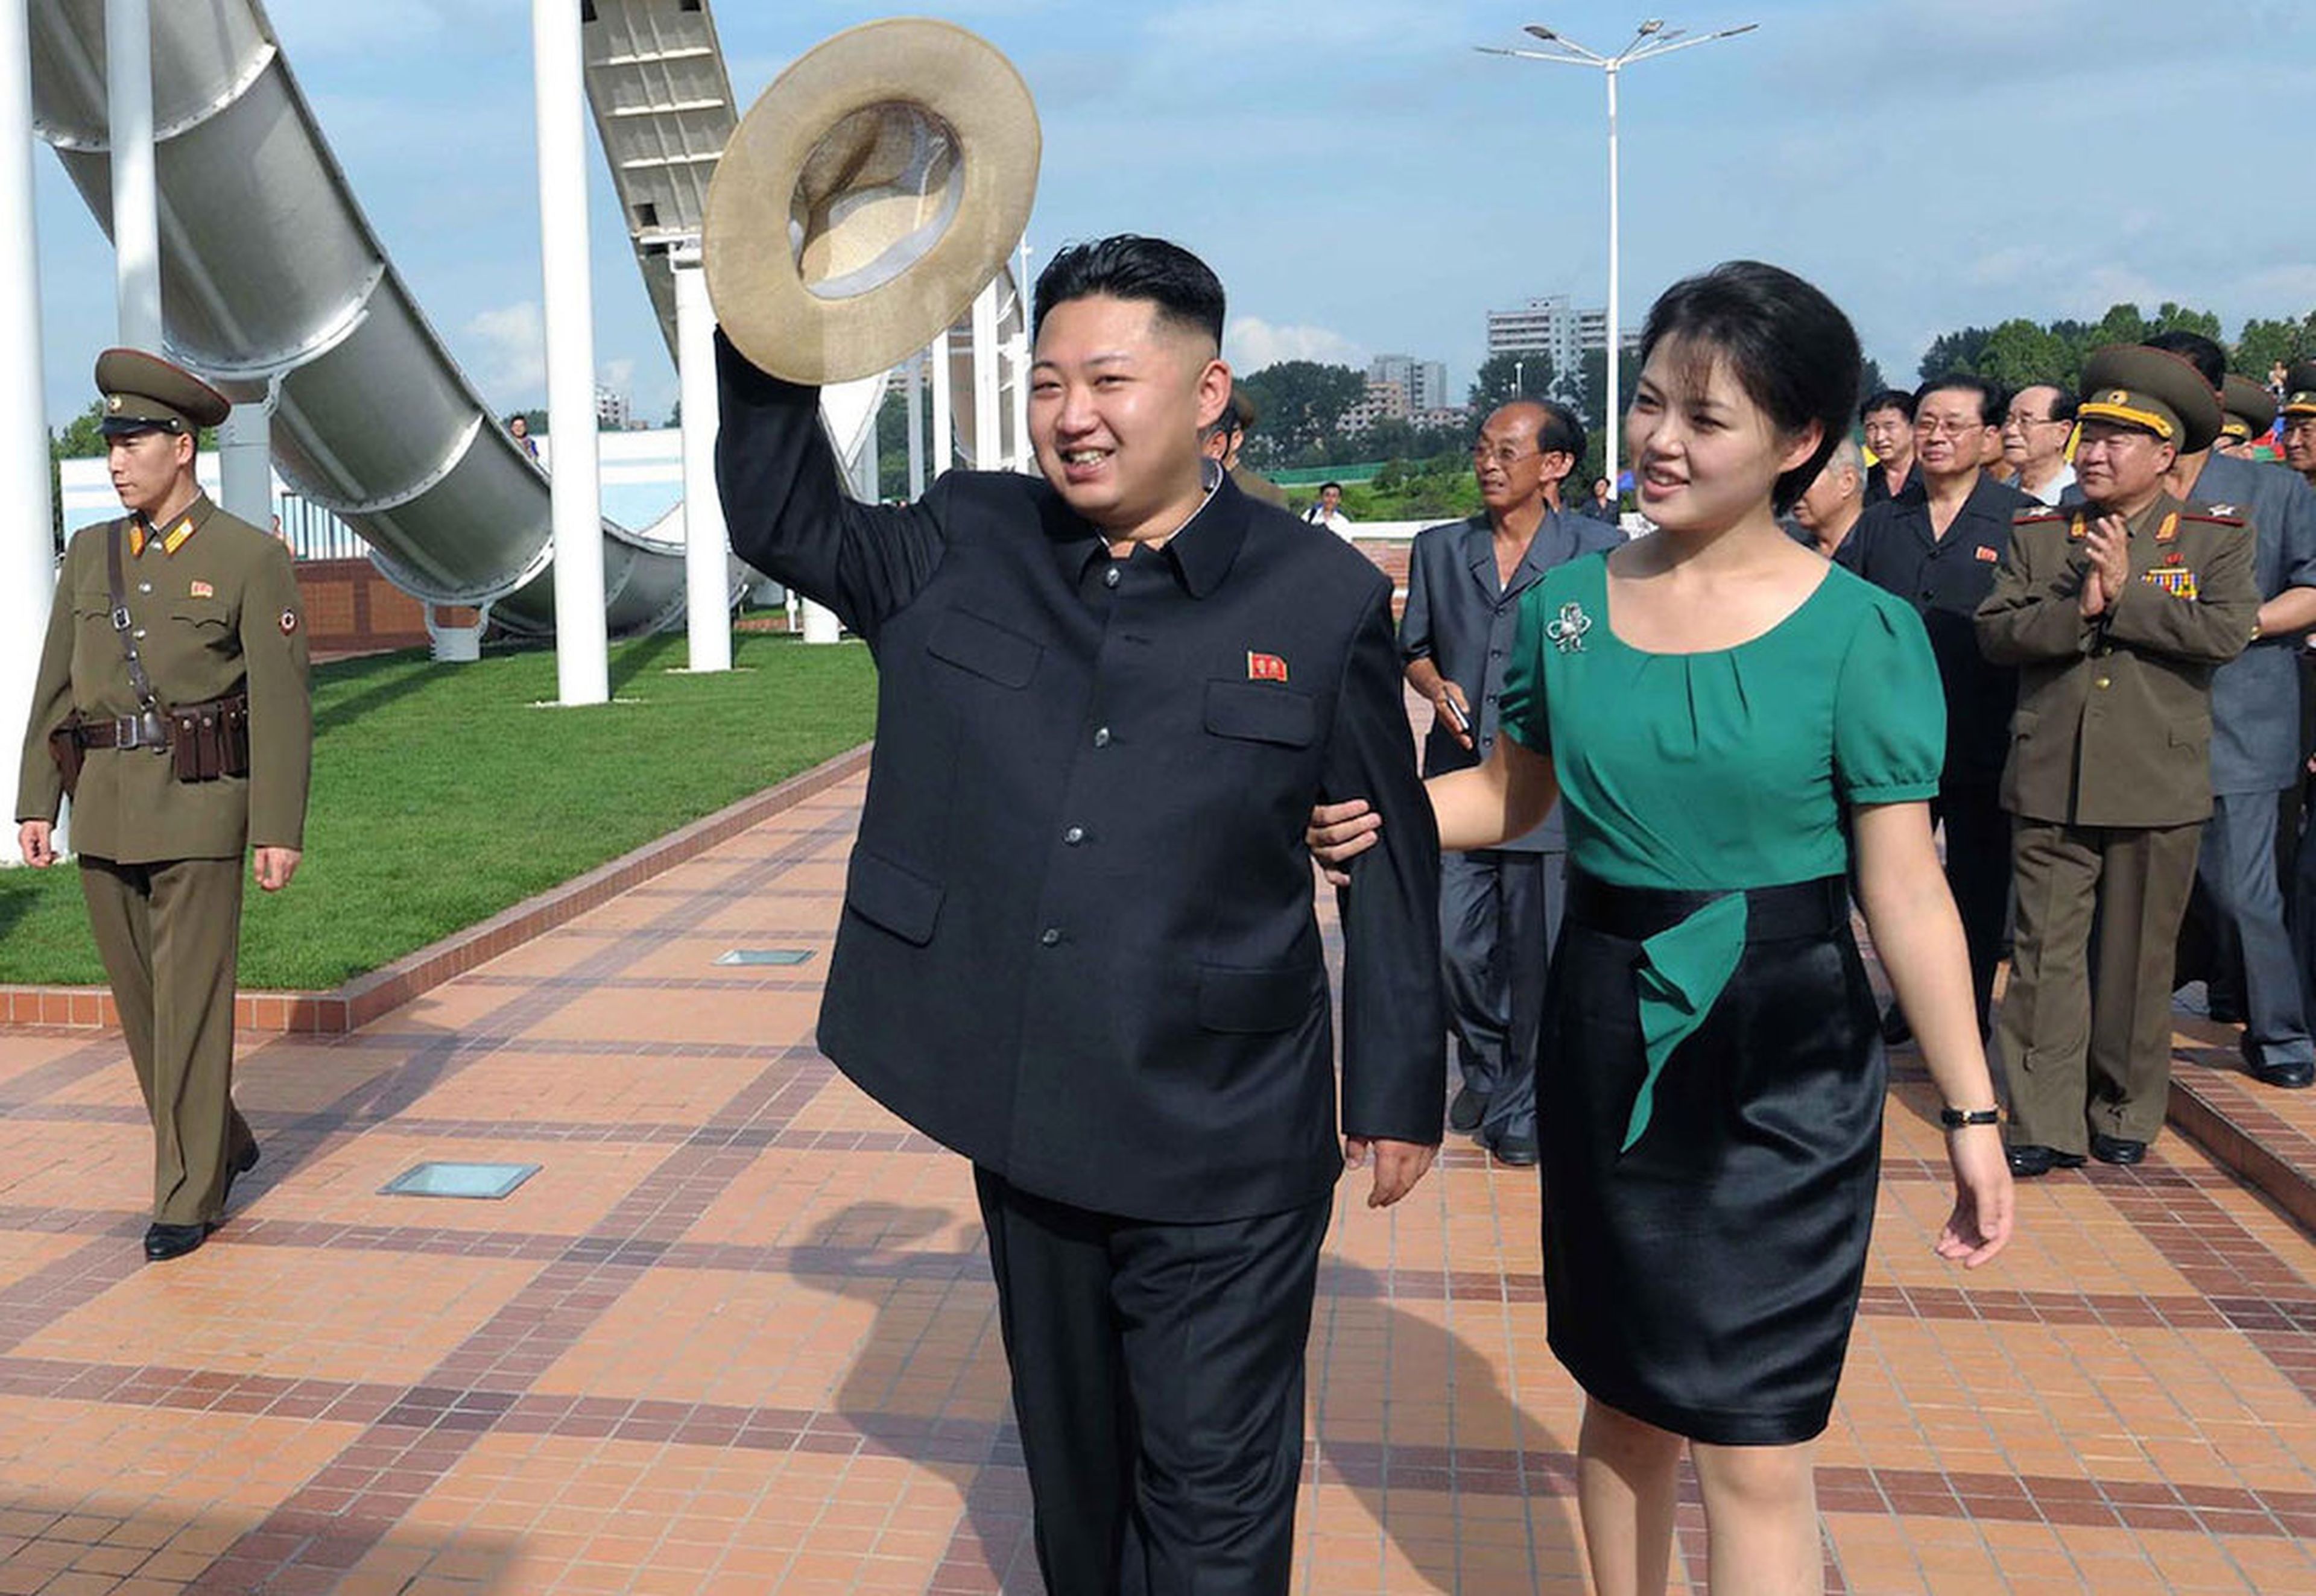 Kim y su mujer Ri en la ceremonia del parque temático Rungna People's Pleasure Ground en la isla de Rungra a orillas del río Taedong en Pyongyang el 25 de julio de 2012 fotografía publicada por la KCNA.